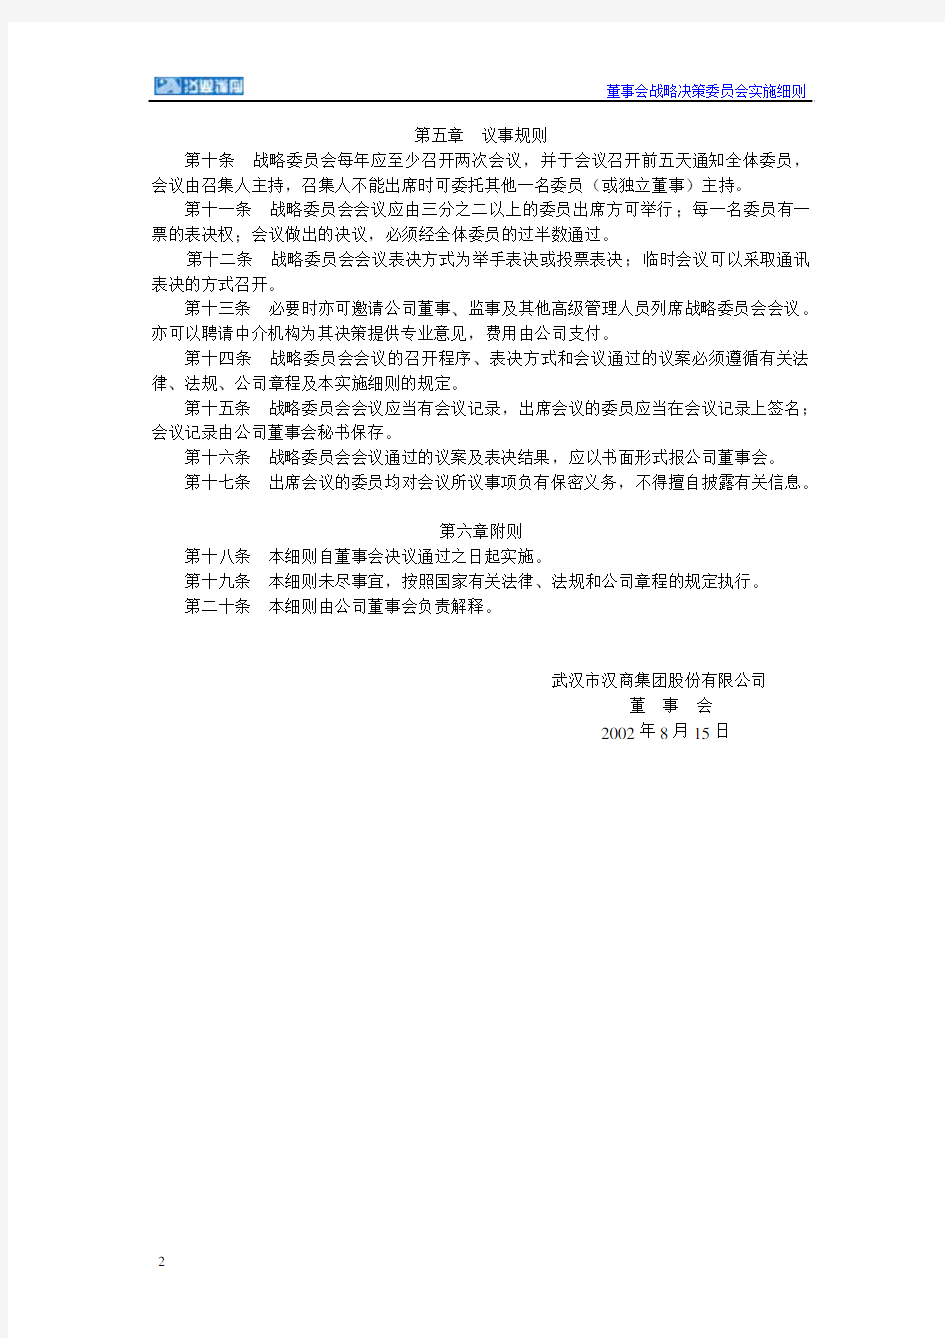 武汉市汉商集团股份有限公司董事会战略决策委员会实施细则